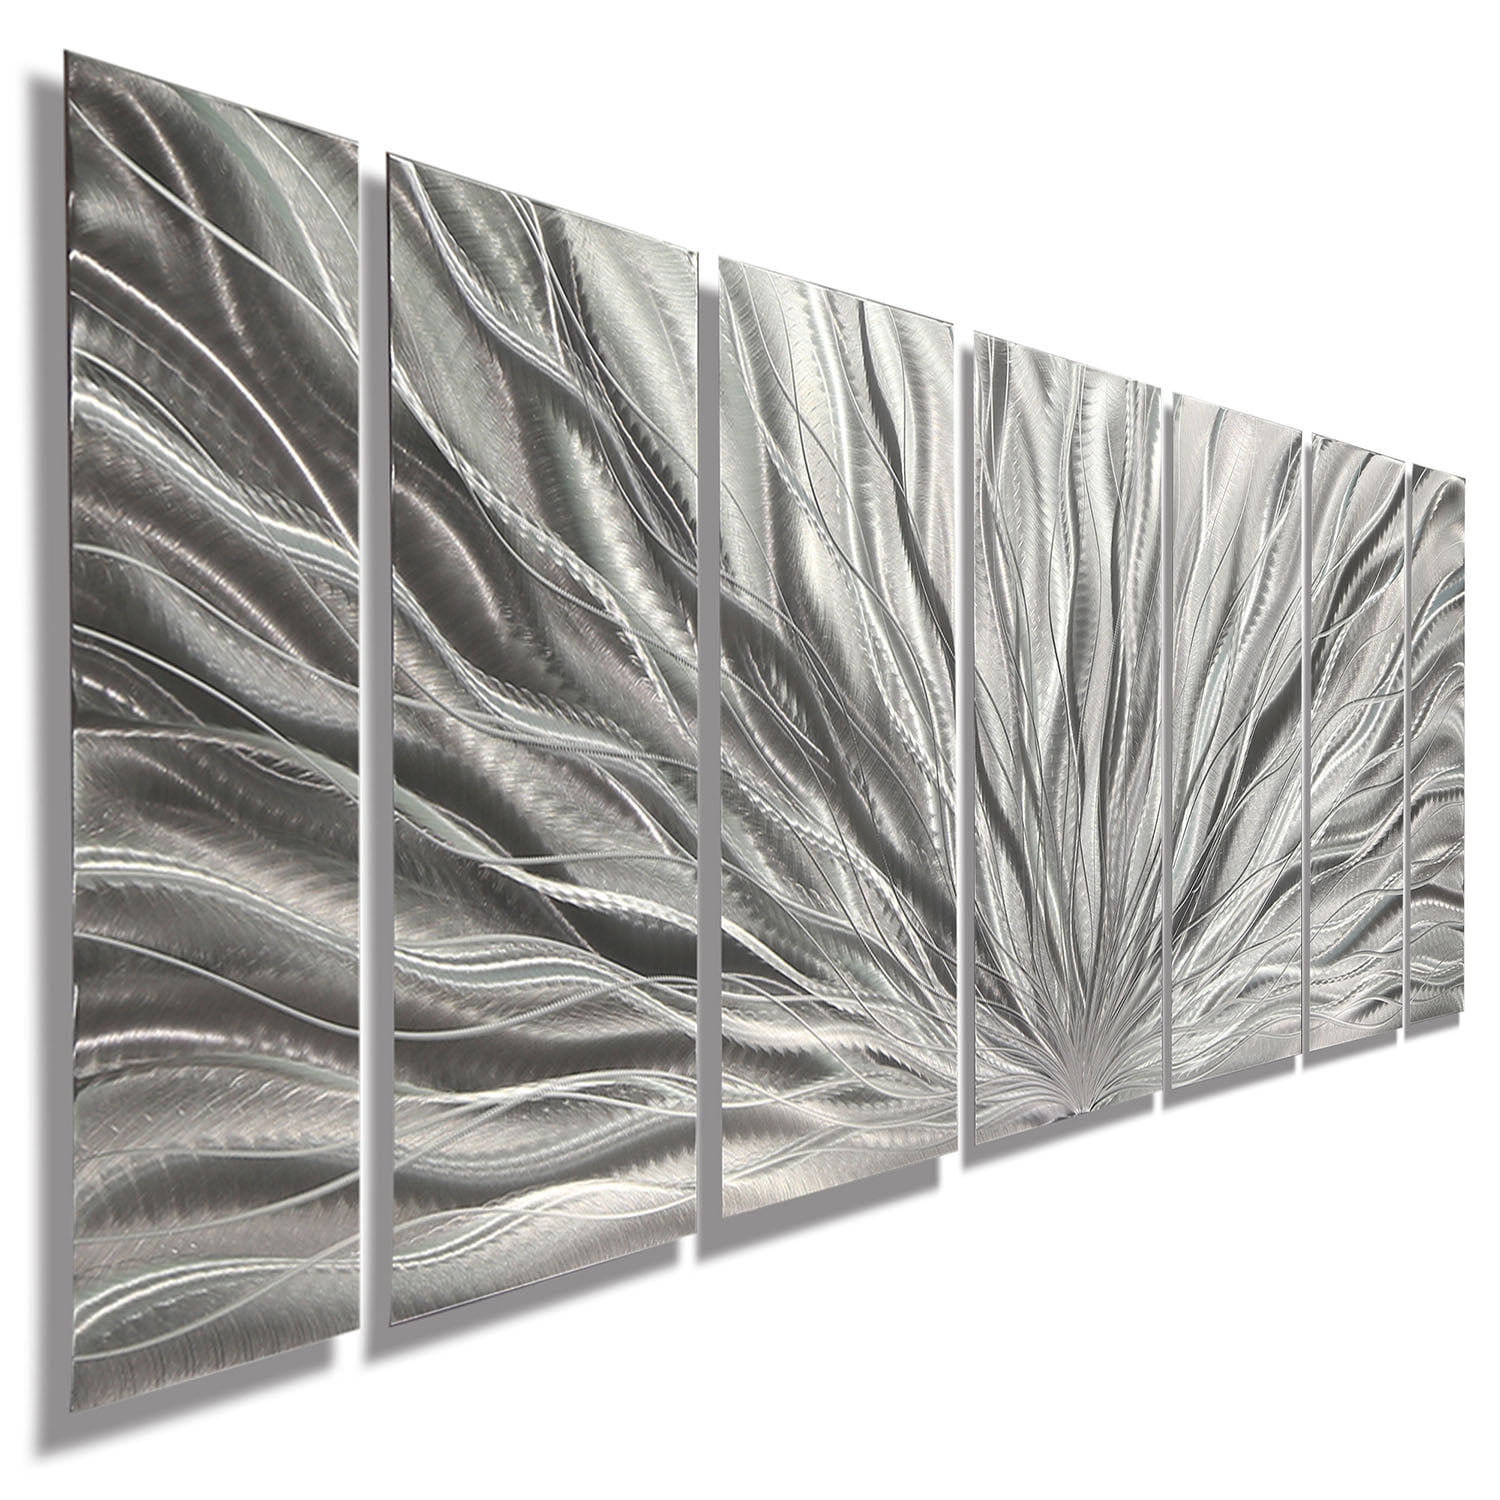 Statements2000 Abstract 3D Metal Wall Art Sculpture Silver Painting Jon Allen 